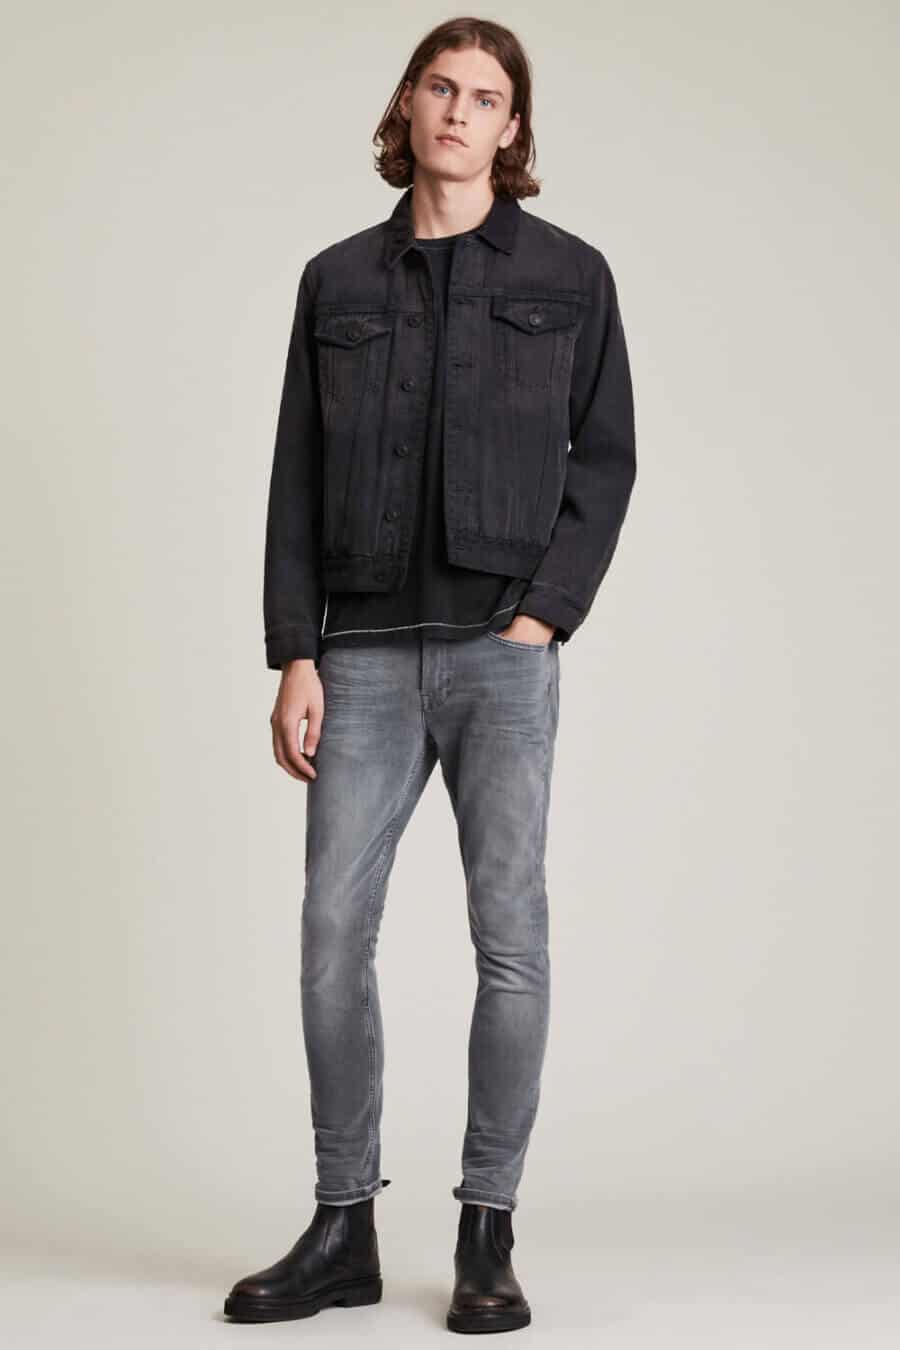 Monochrome double denim outfit for men - black jeans, grey jacket